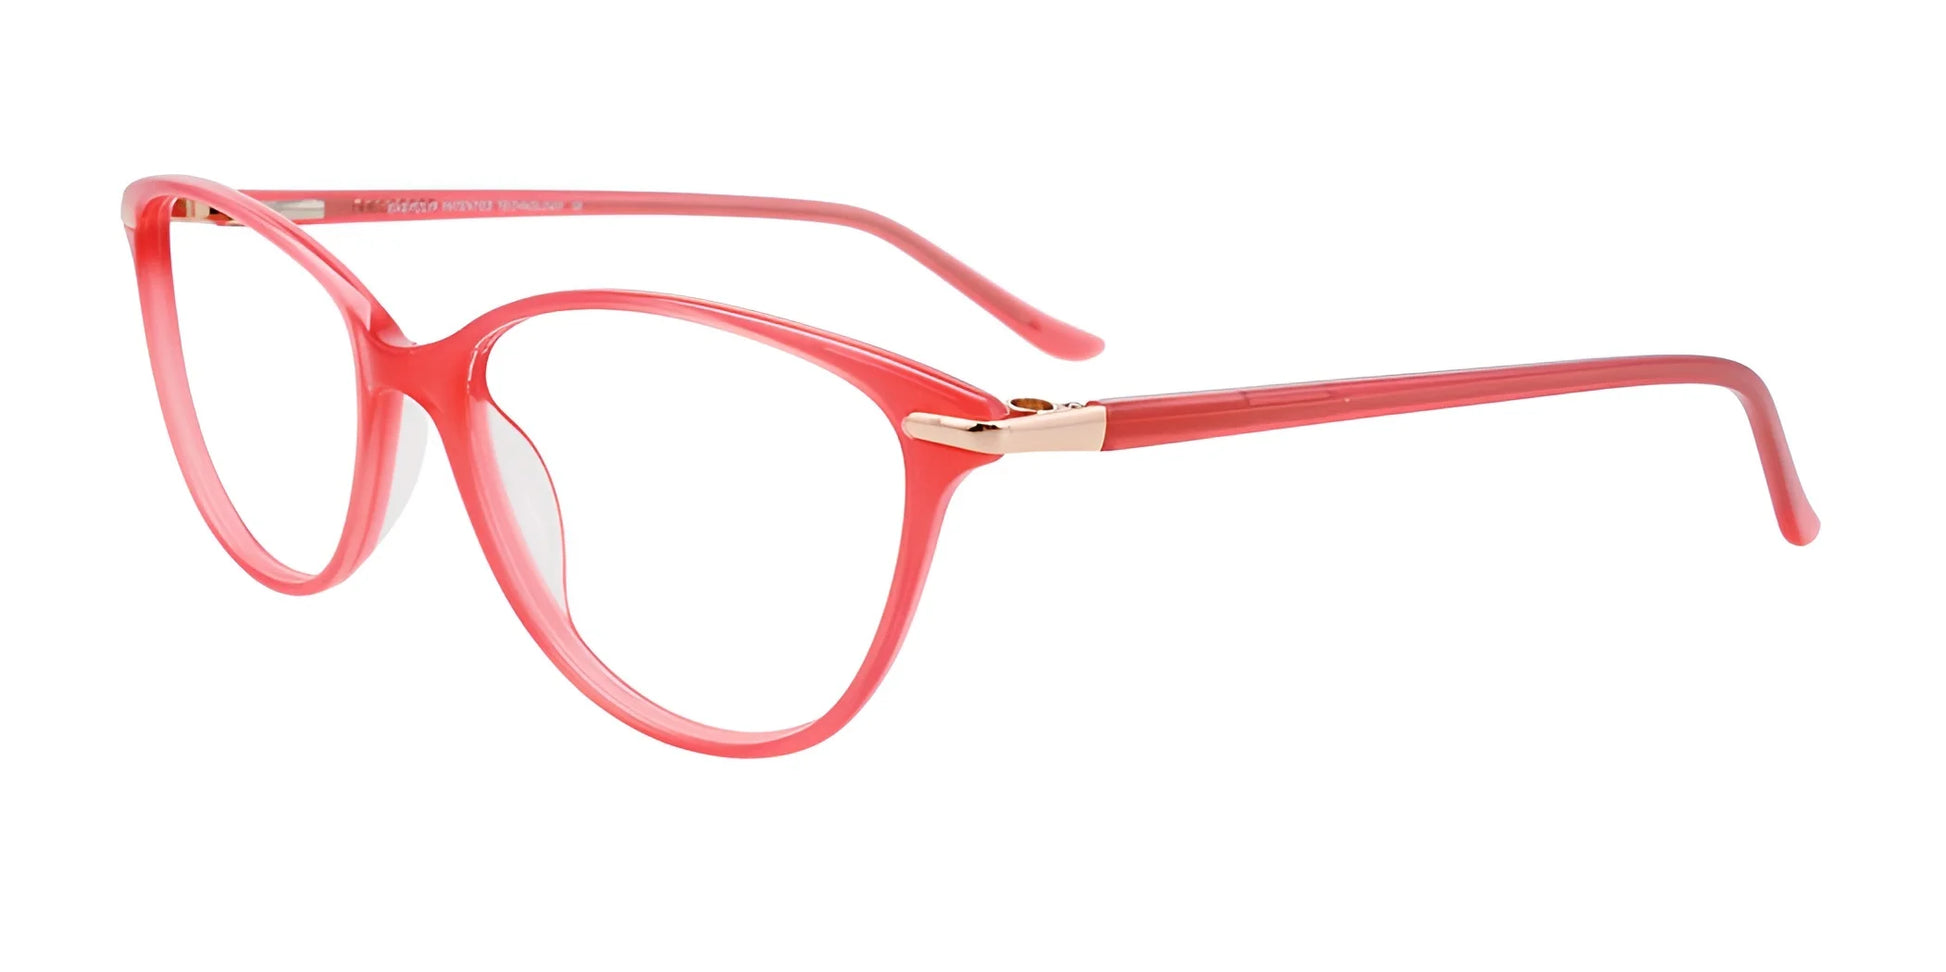 EasyClip EC504 Eyeglasses Pink & Gold